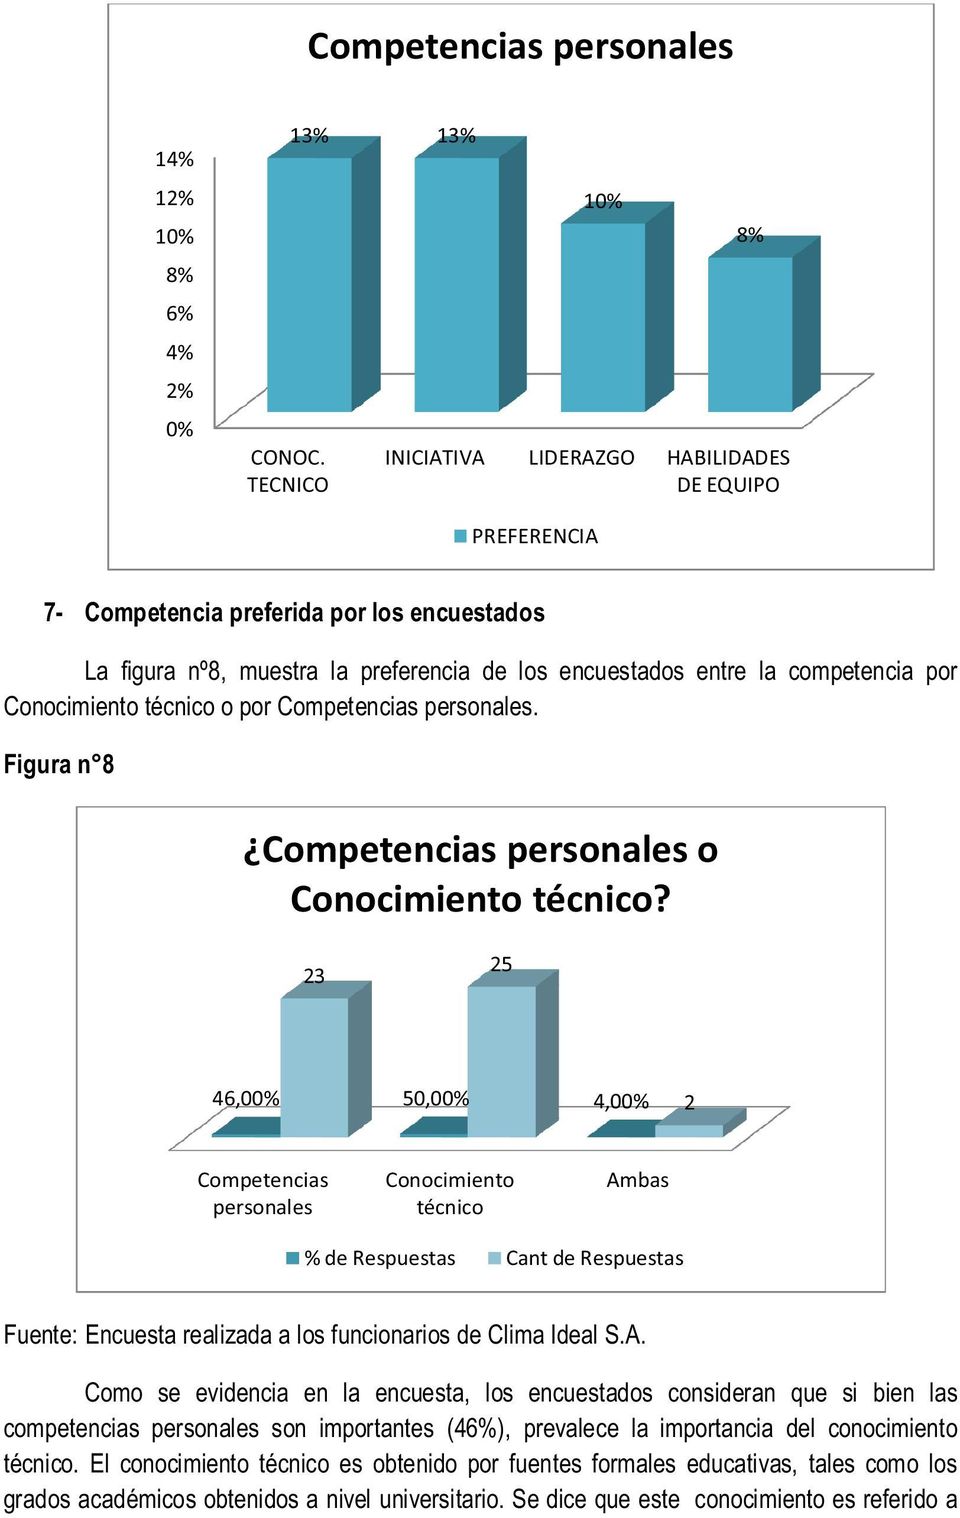 Como se evidencia en la encuesta, los encuestados consideran que si bien las competencias personales son importantes (46%), prevalece la importancia del